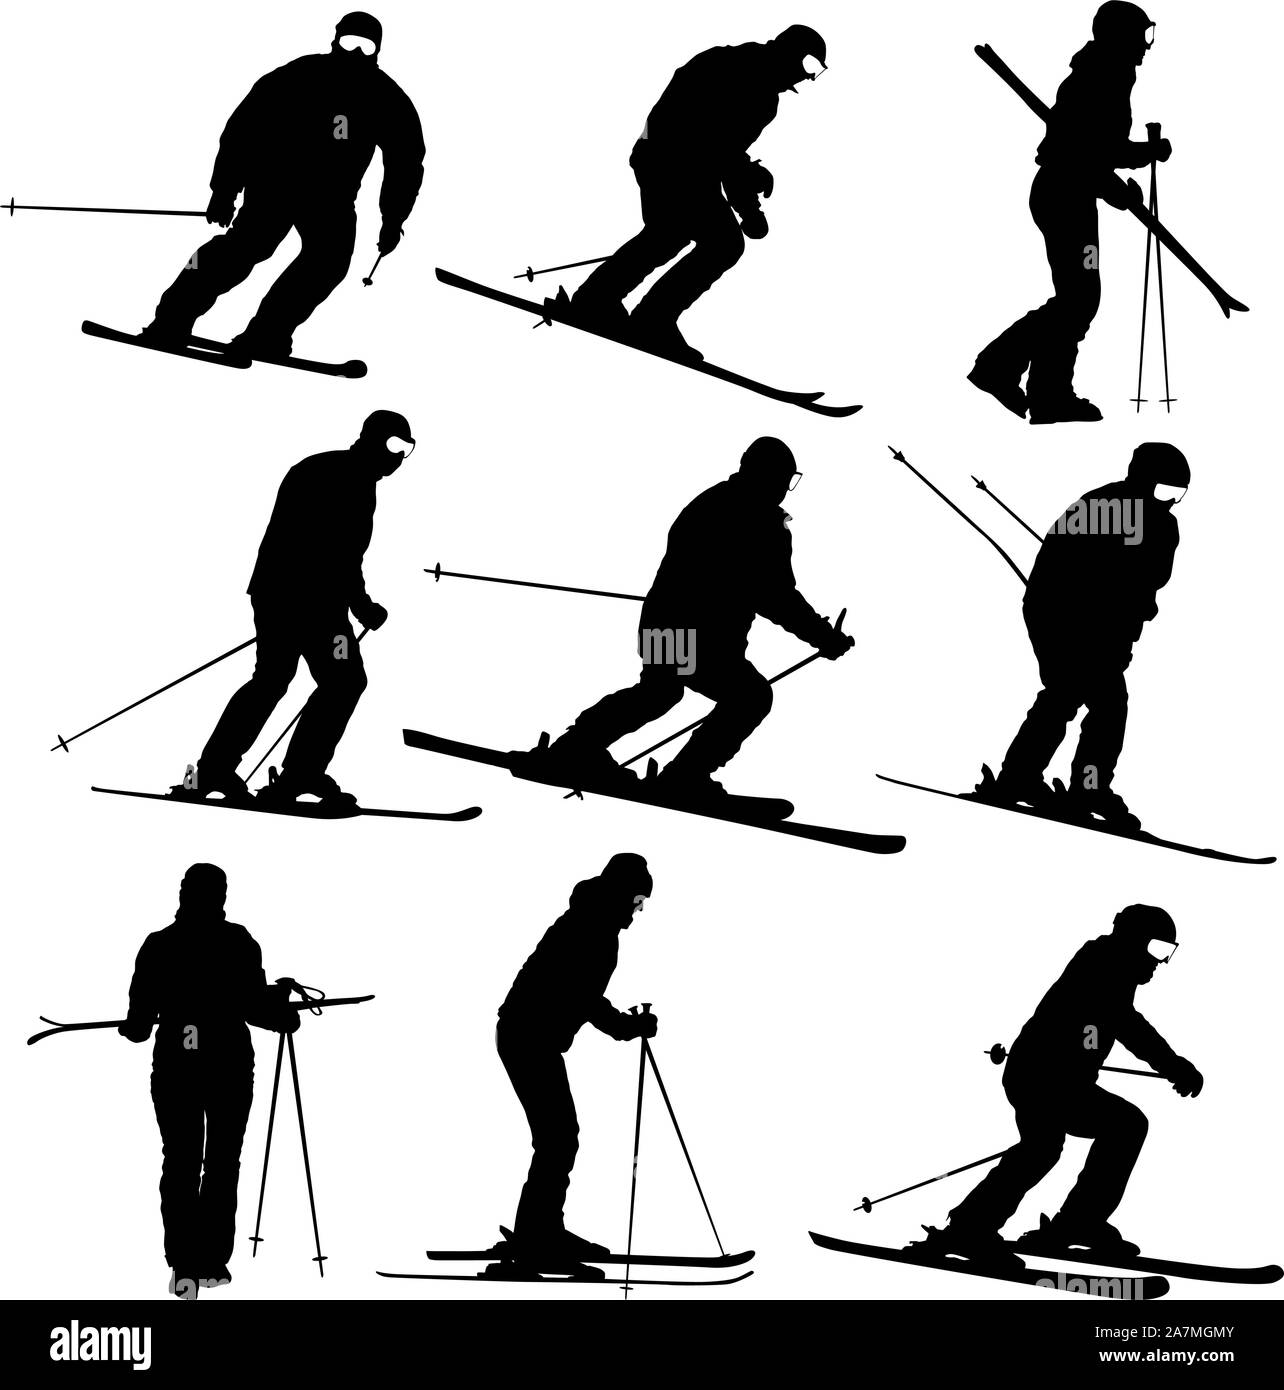 Conjunto esquiador de montaña acelerando la silueta deportiva pendiente abajo. Ilustración del Vector